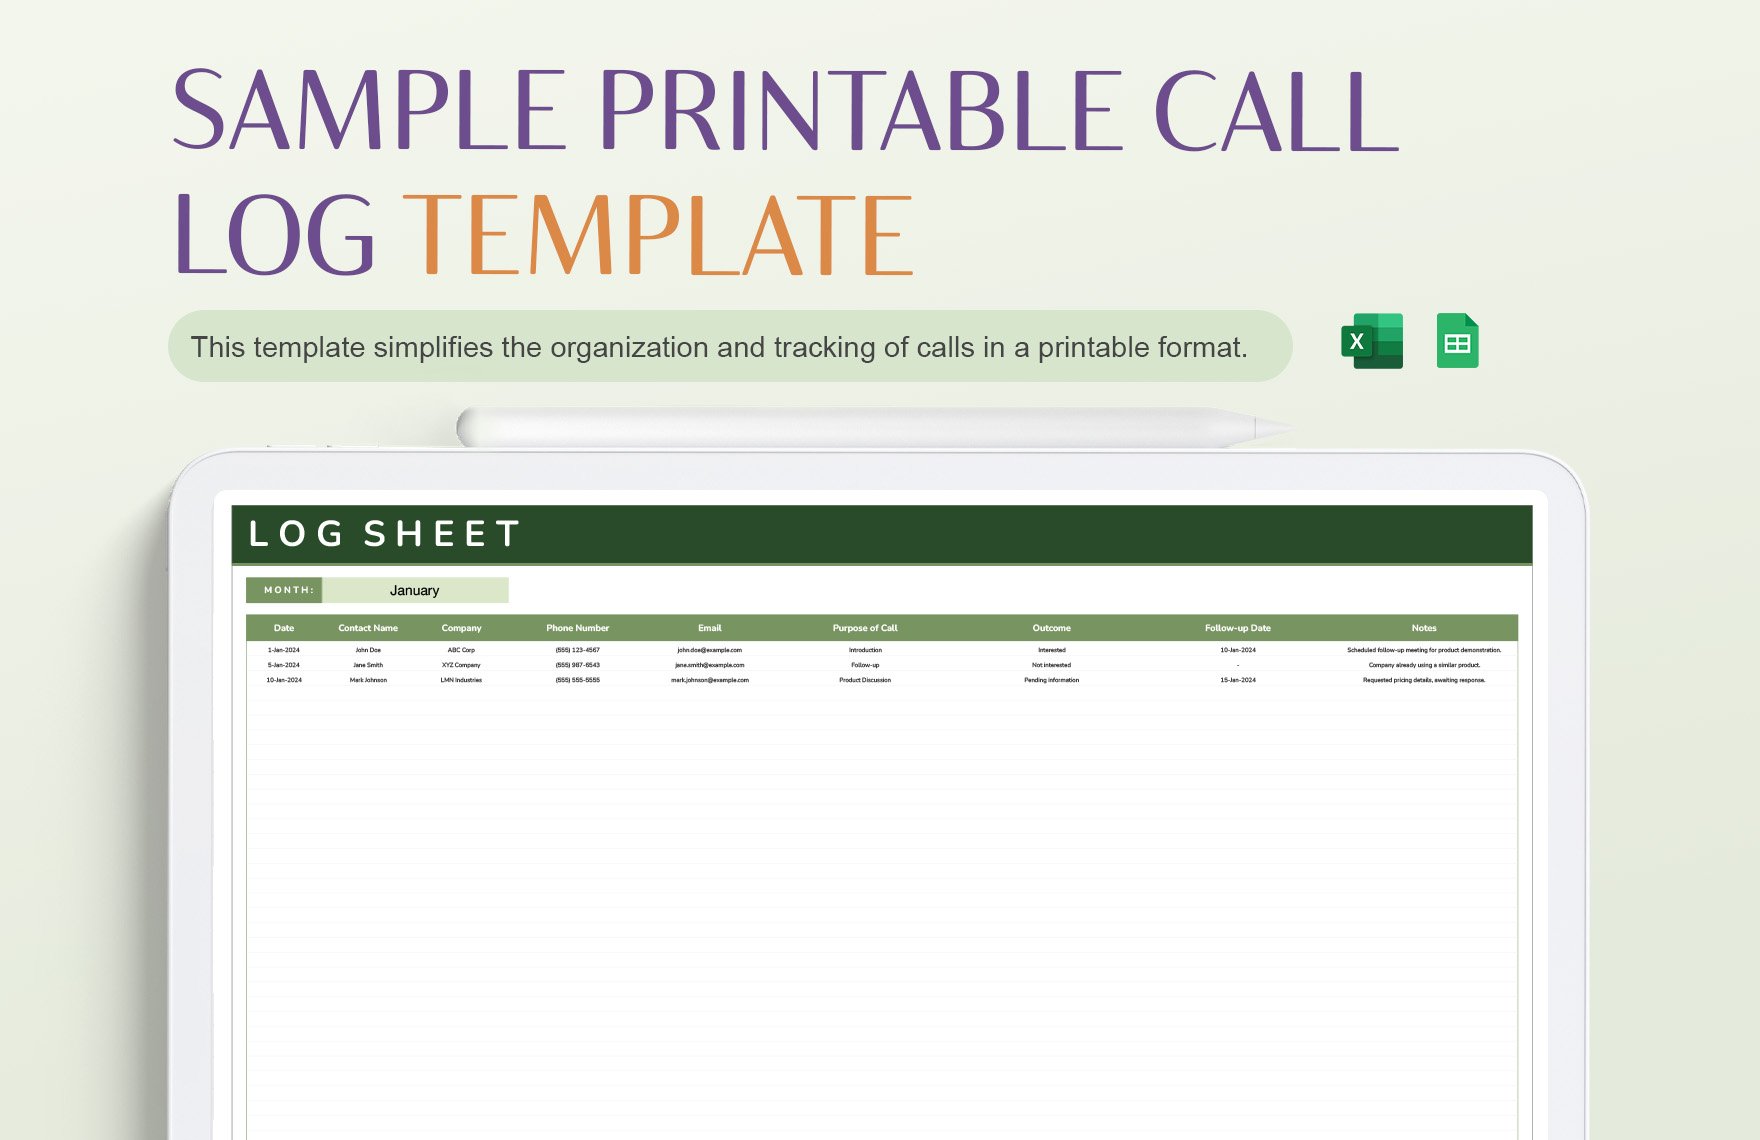 Sample Printable Call Log Template